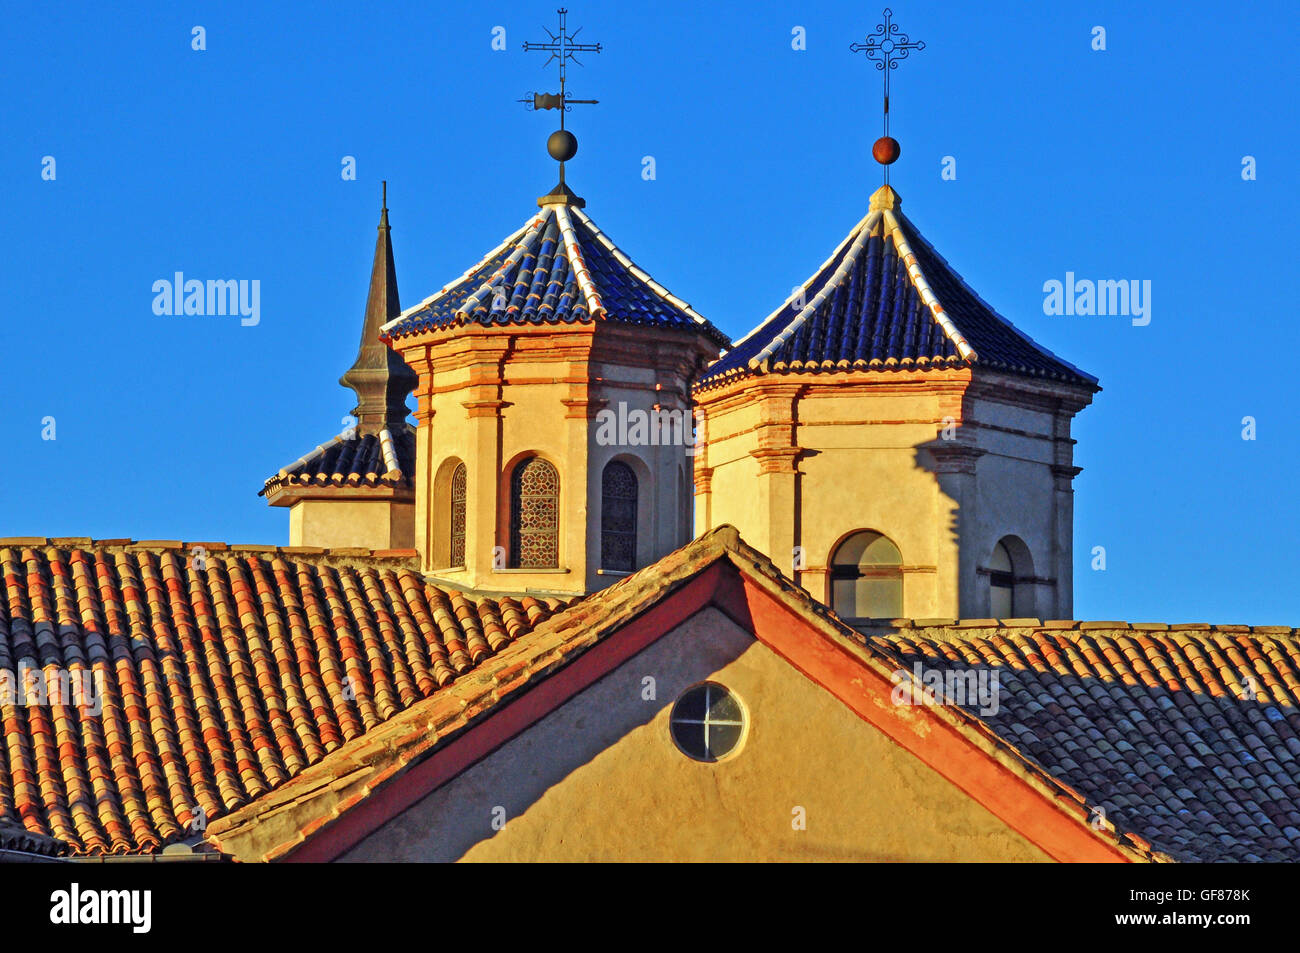 Torres en estilo arquitectónico mudéjar, Cuenca, España Foto de stock